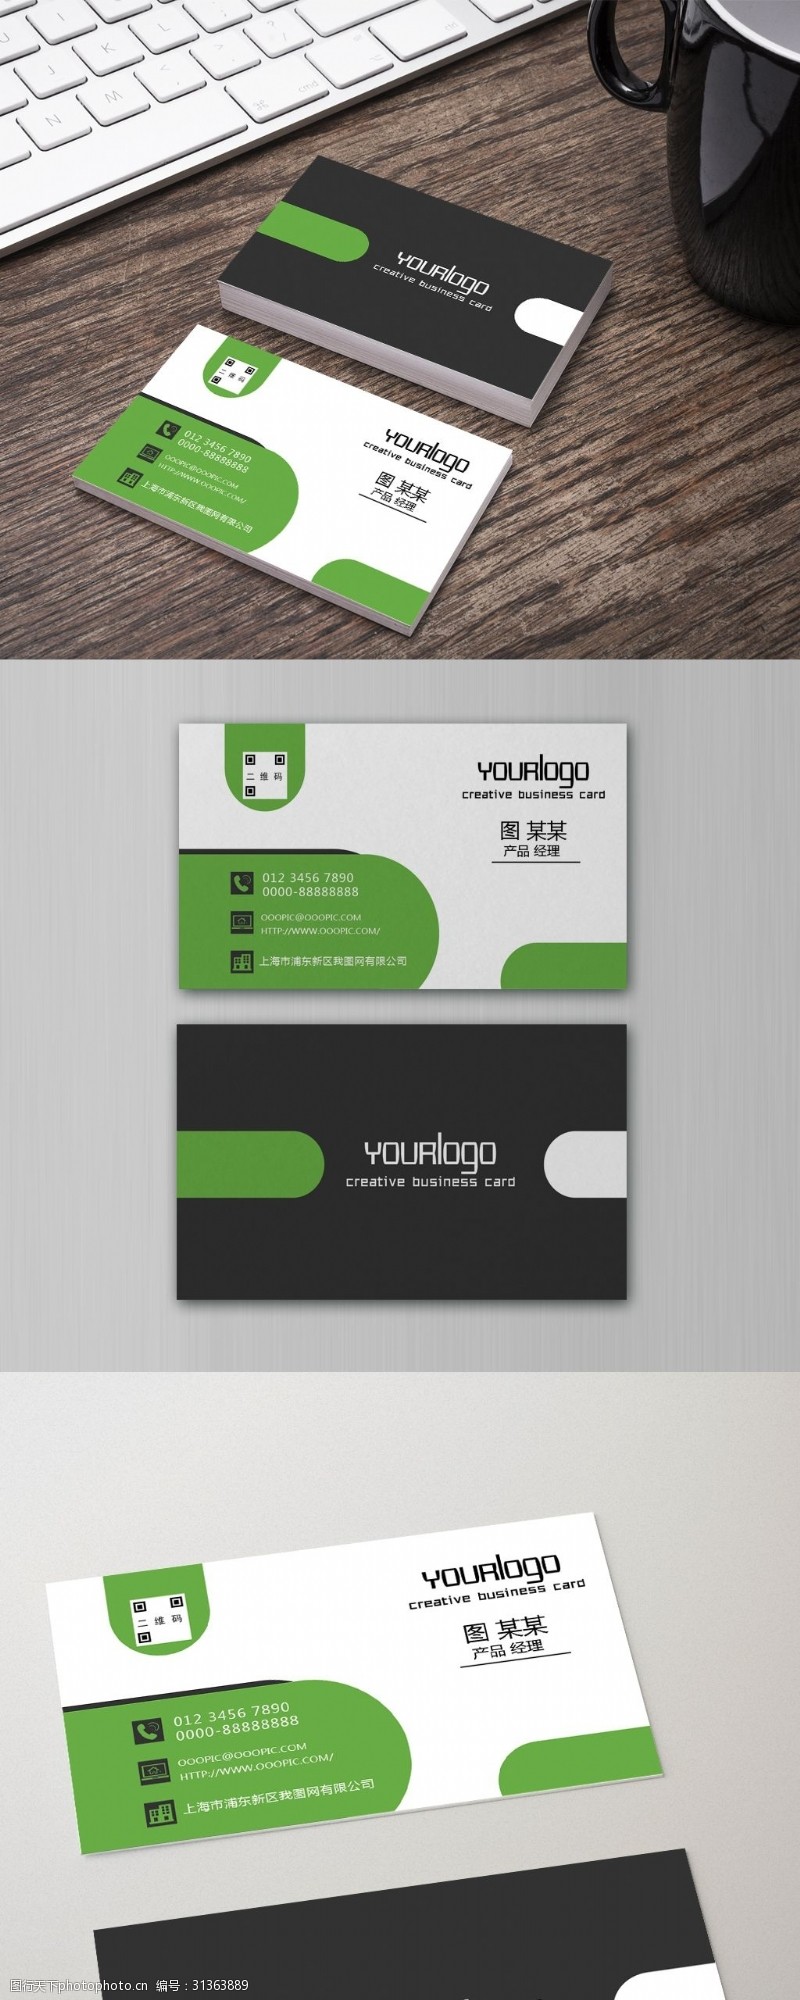 服务卡绿色创意二维码企业个人广告设计名片模板